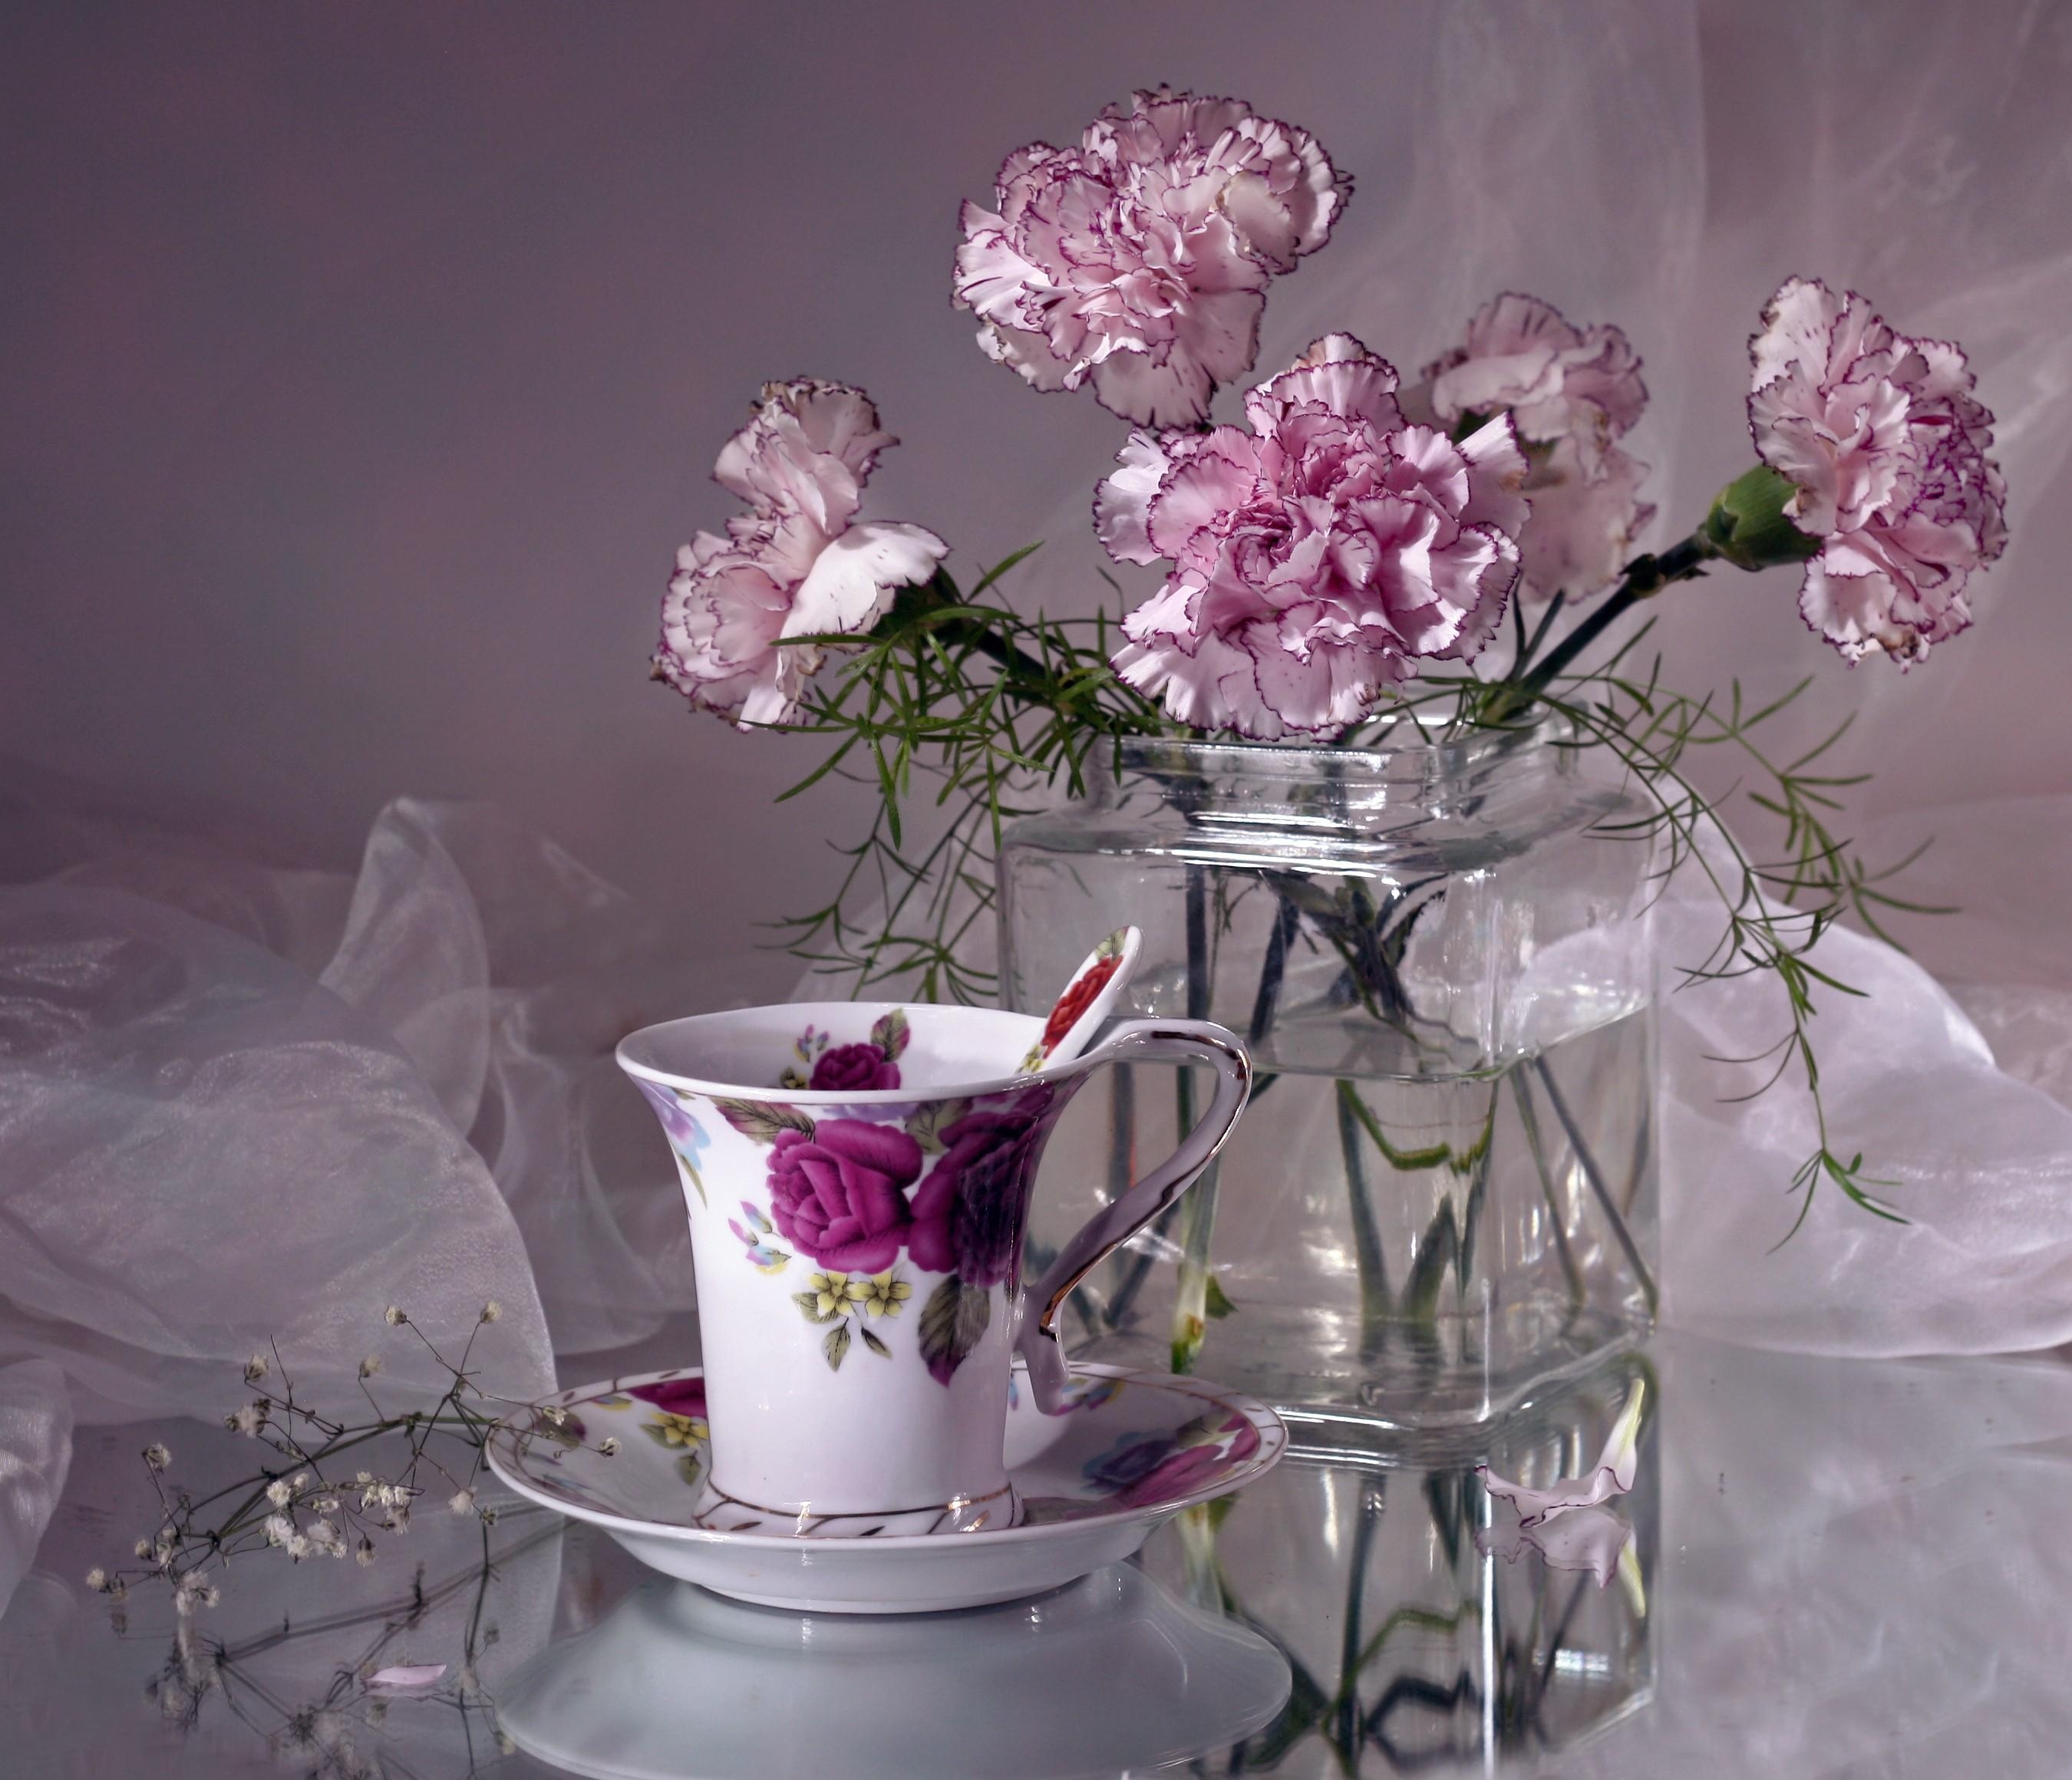 carnations, flowers, vase, tea pair wallpaper for mobile